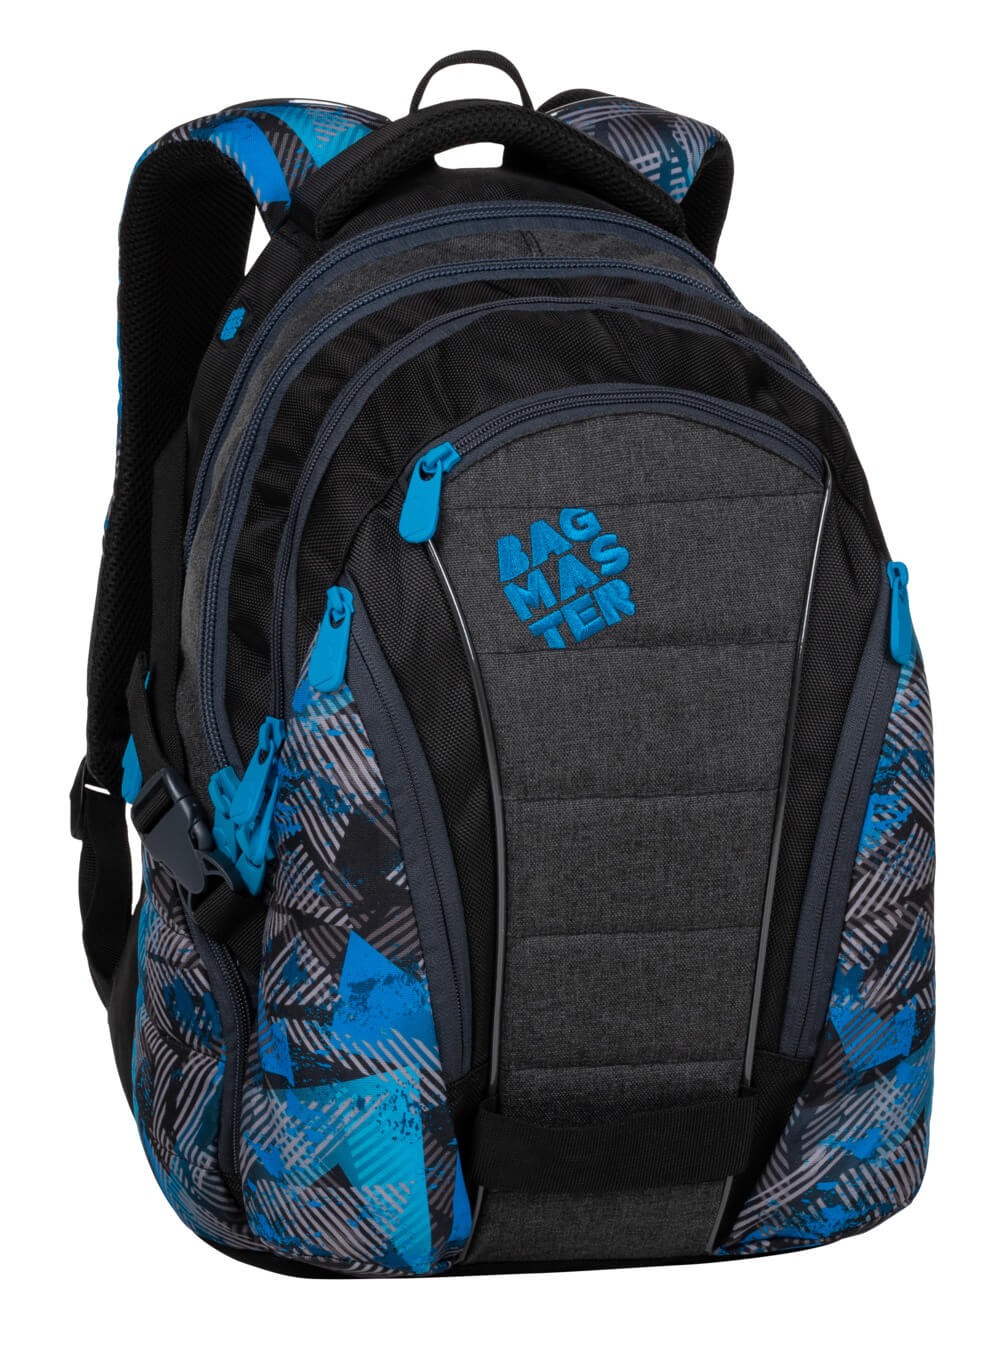 Studentský batoh BAG 20 D - modrý